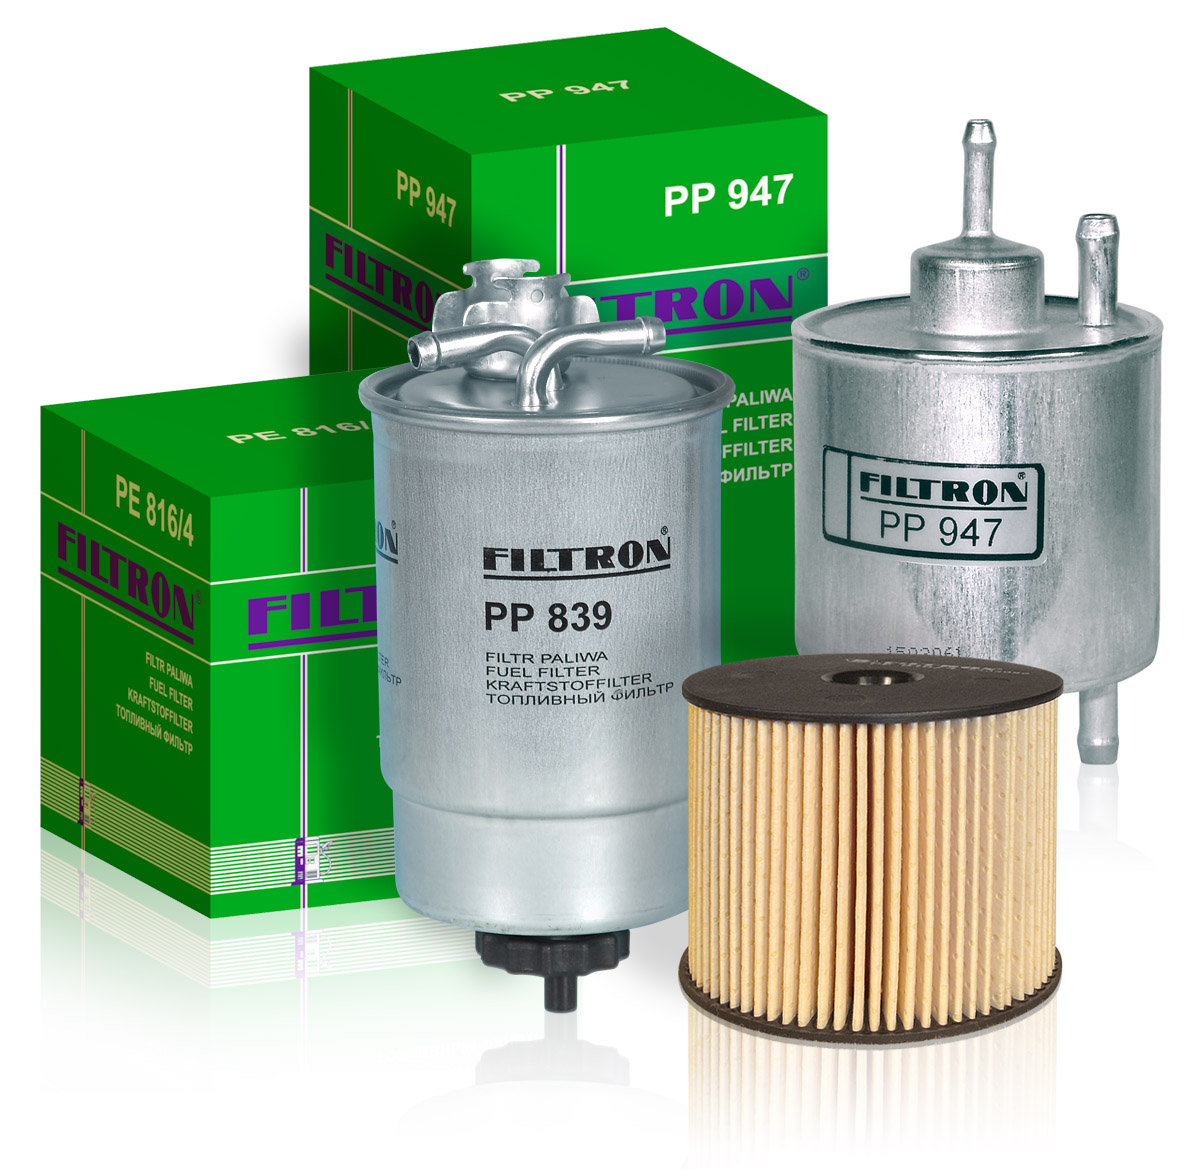 Фильтр очистки топлива дизель. FILTRON pp969 фильтр топливный. FILTRON pp857. Pp853 FILTRON. PP 857/1 фильтр топливный.